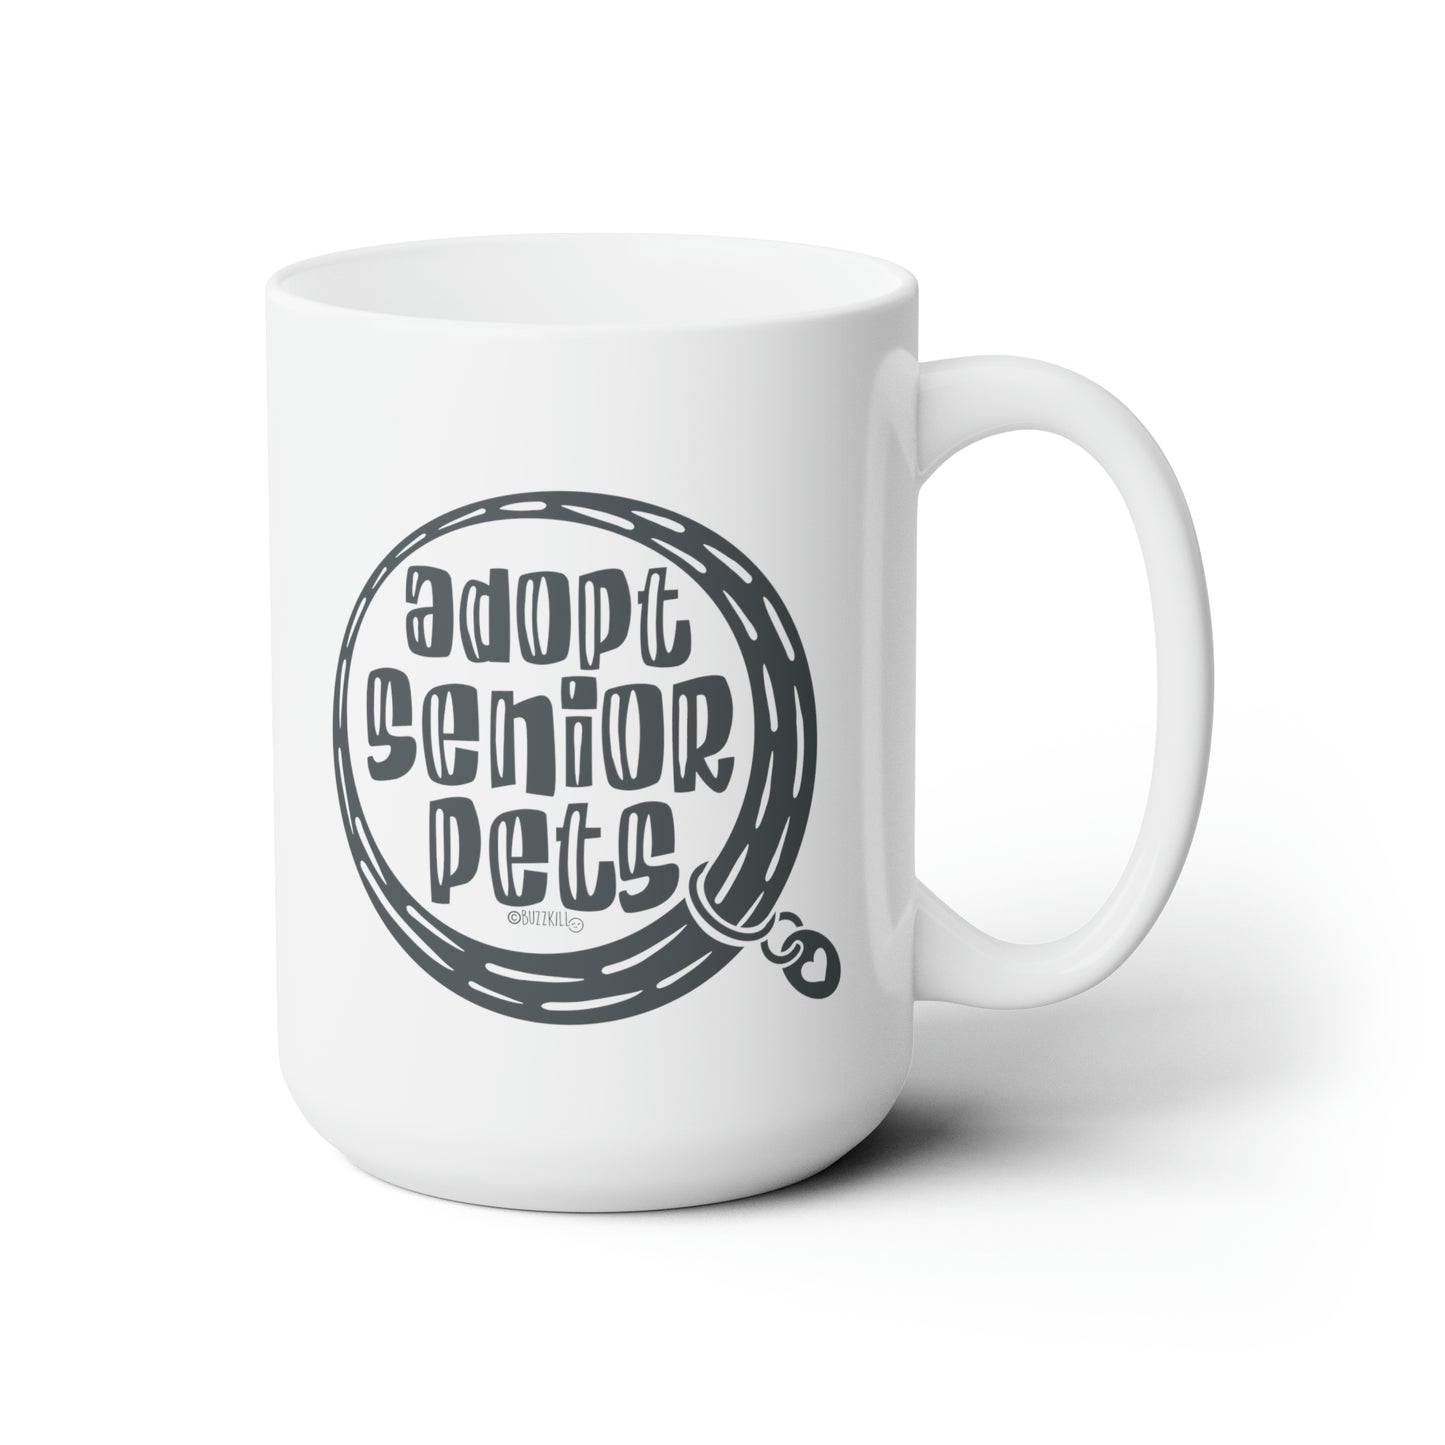 Adopt Senior Pets - Ceramic Mug 15oz